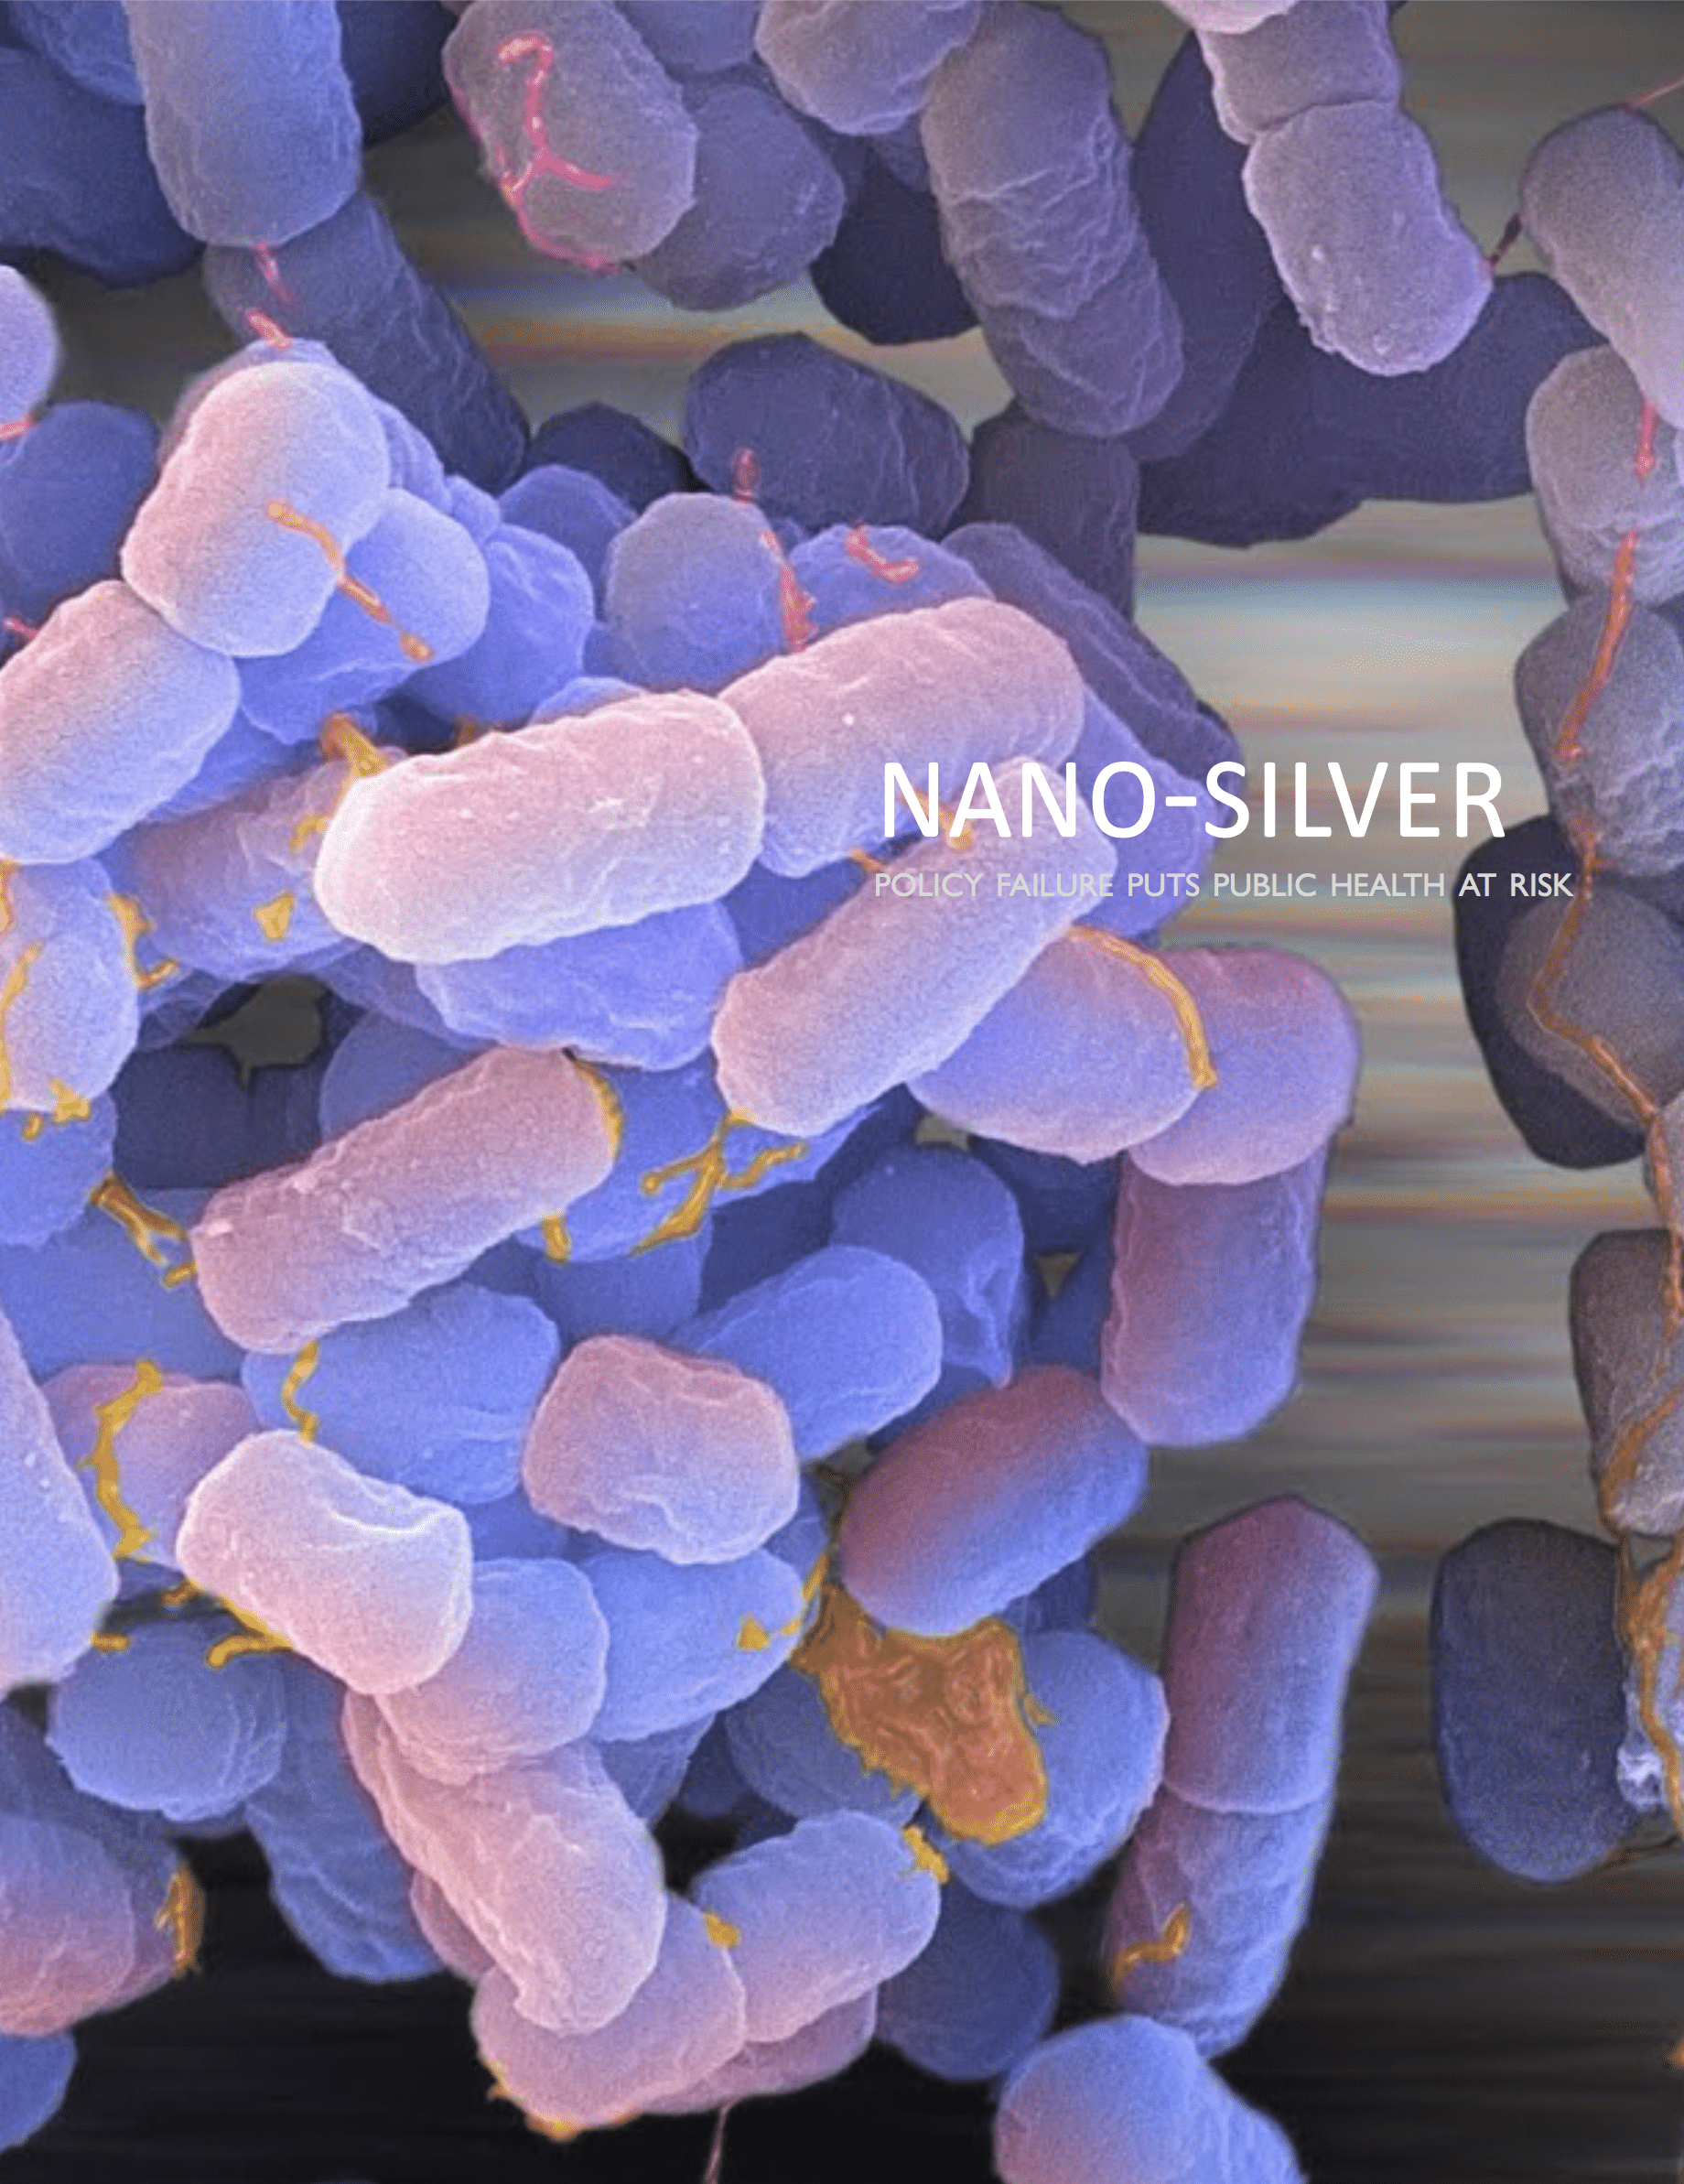 Nano-Silver: Policy Failure Puts Public Health at Risk